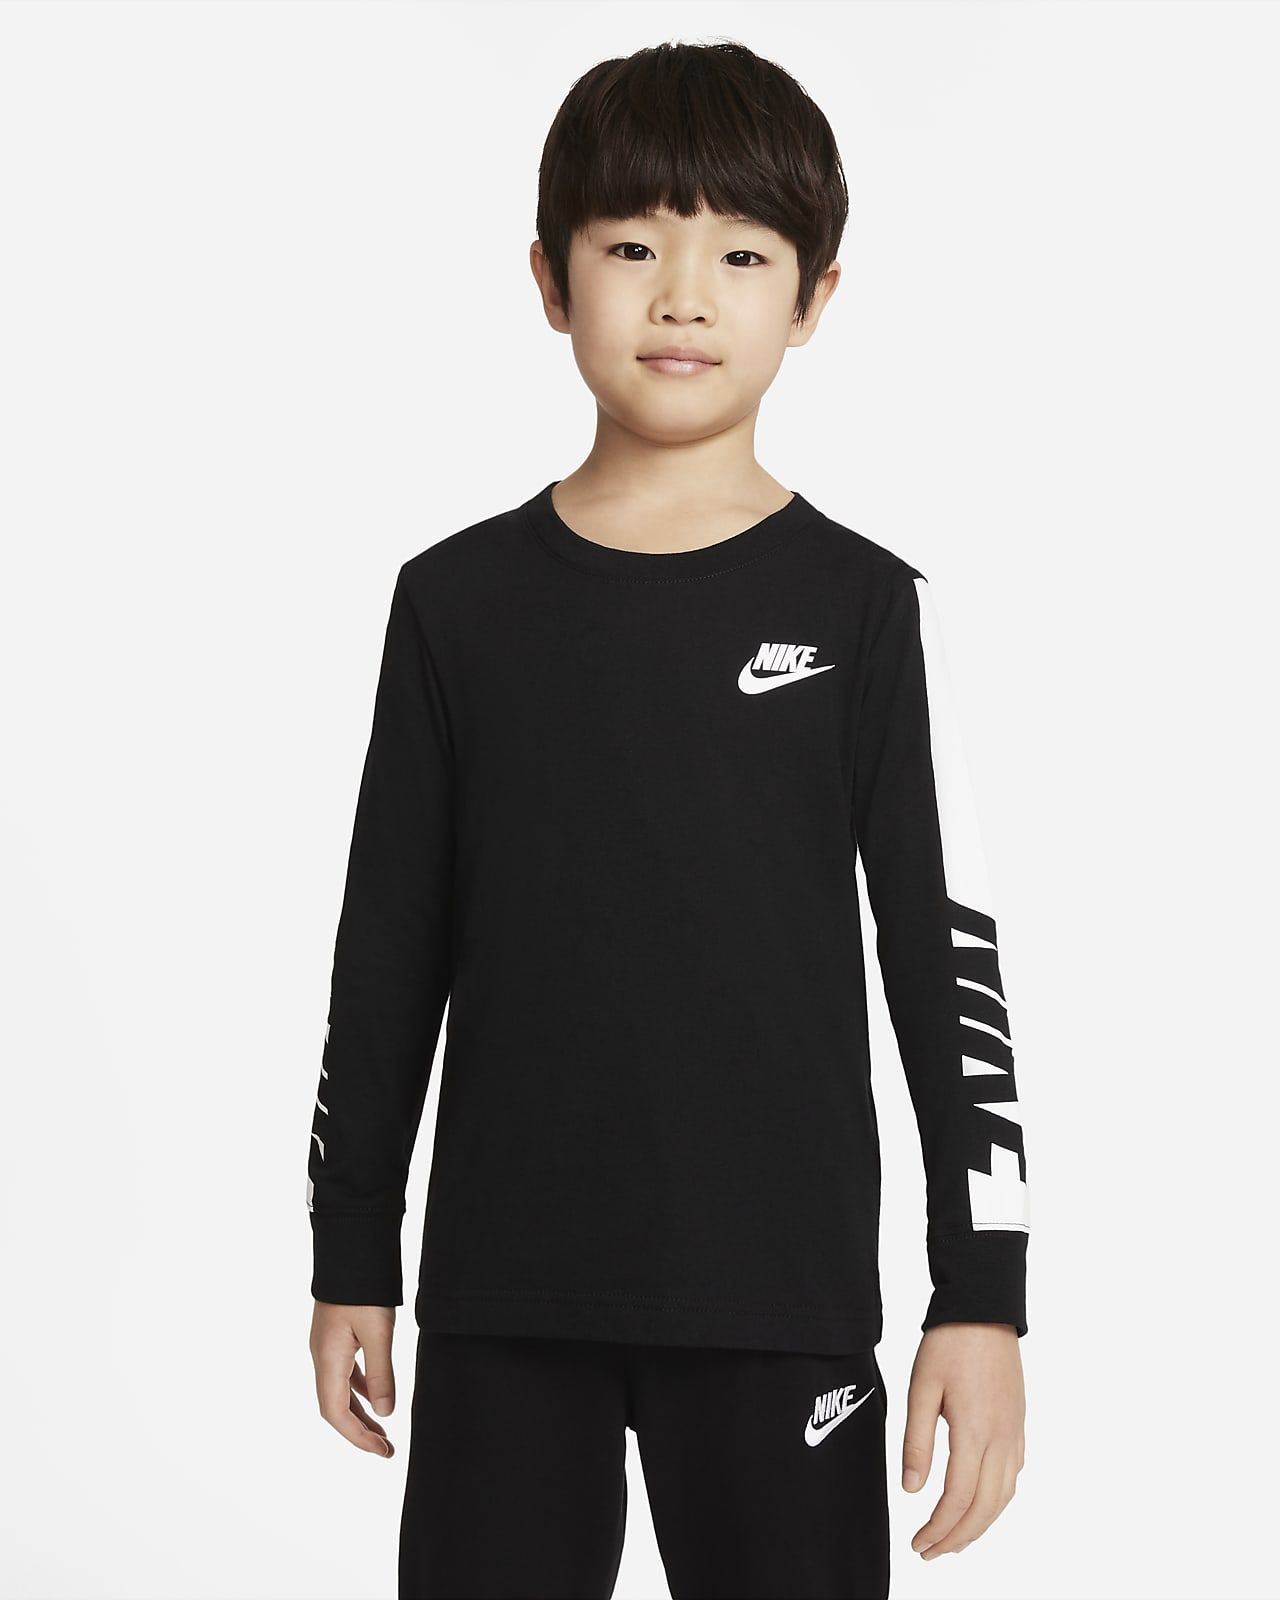 Nike Little Kids' Long-Sleeve Shirt. Nike.com | Nike (US)